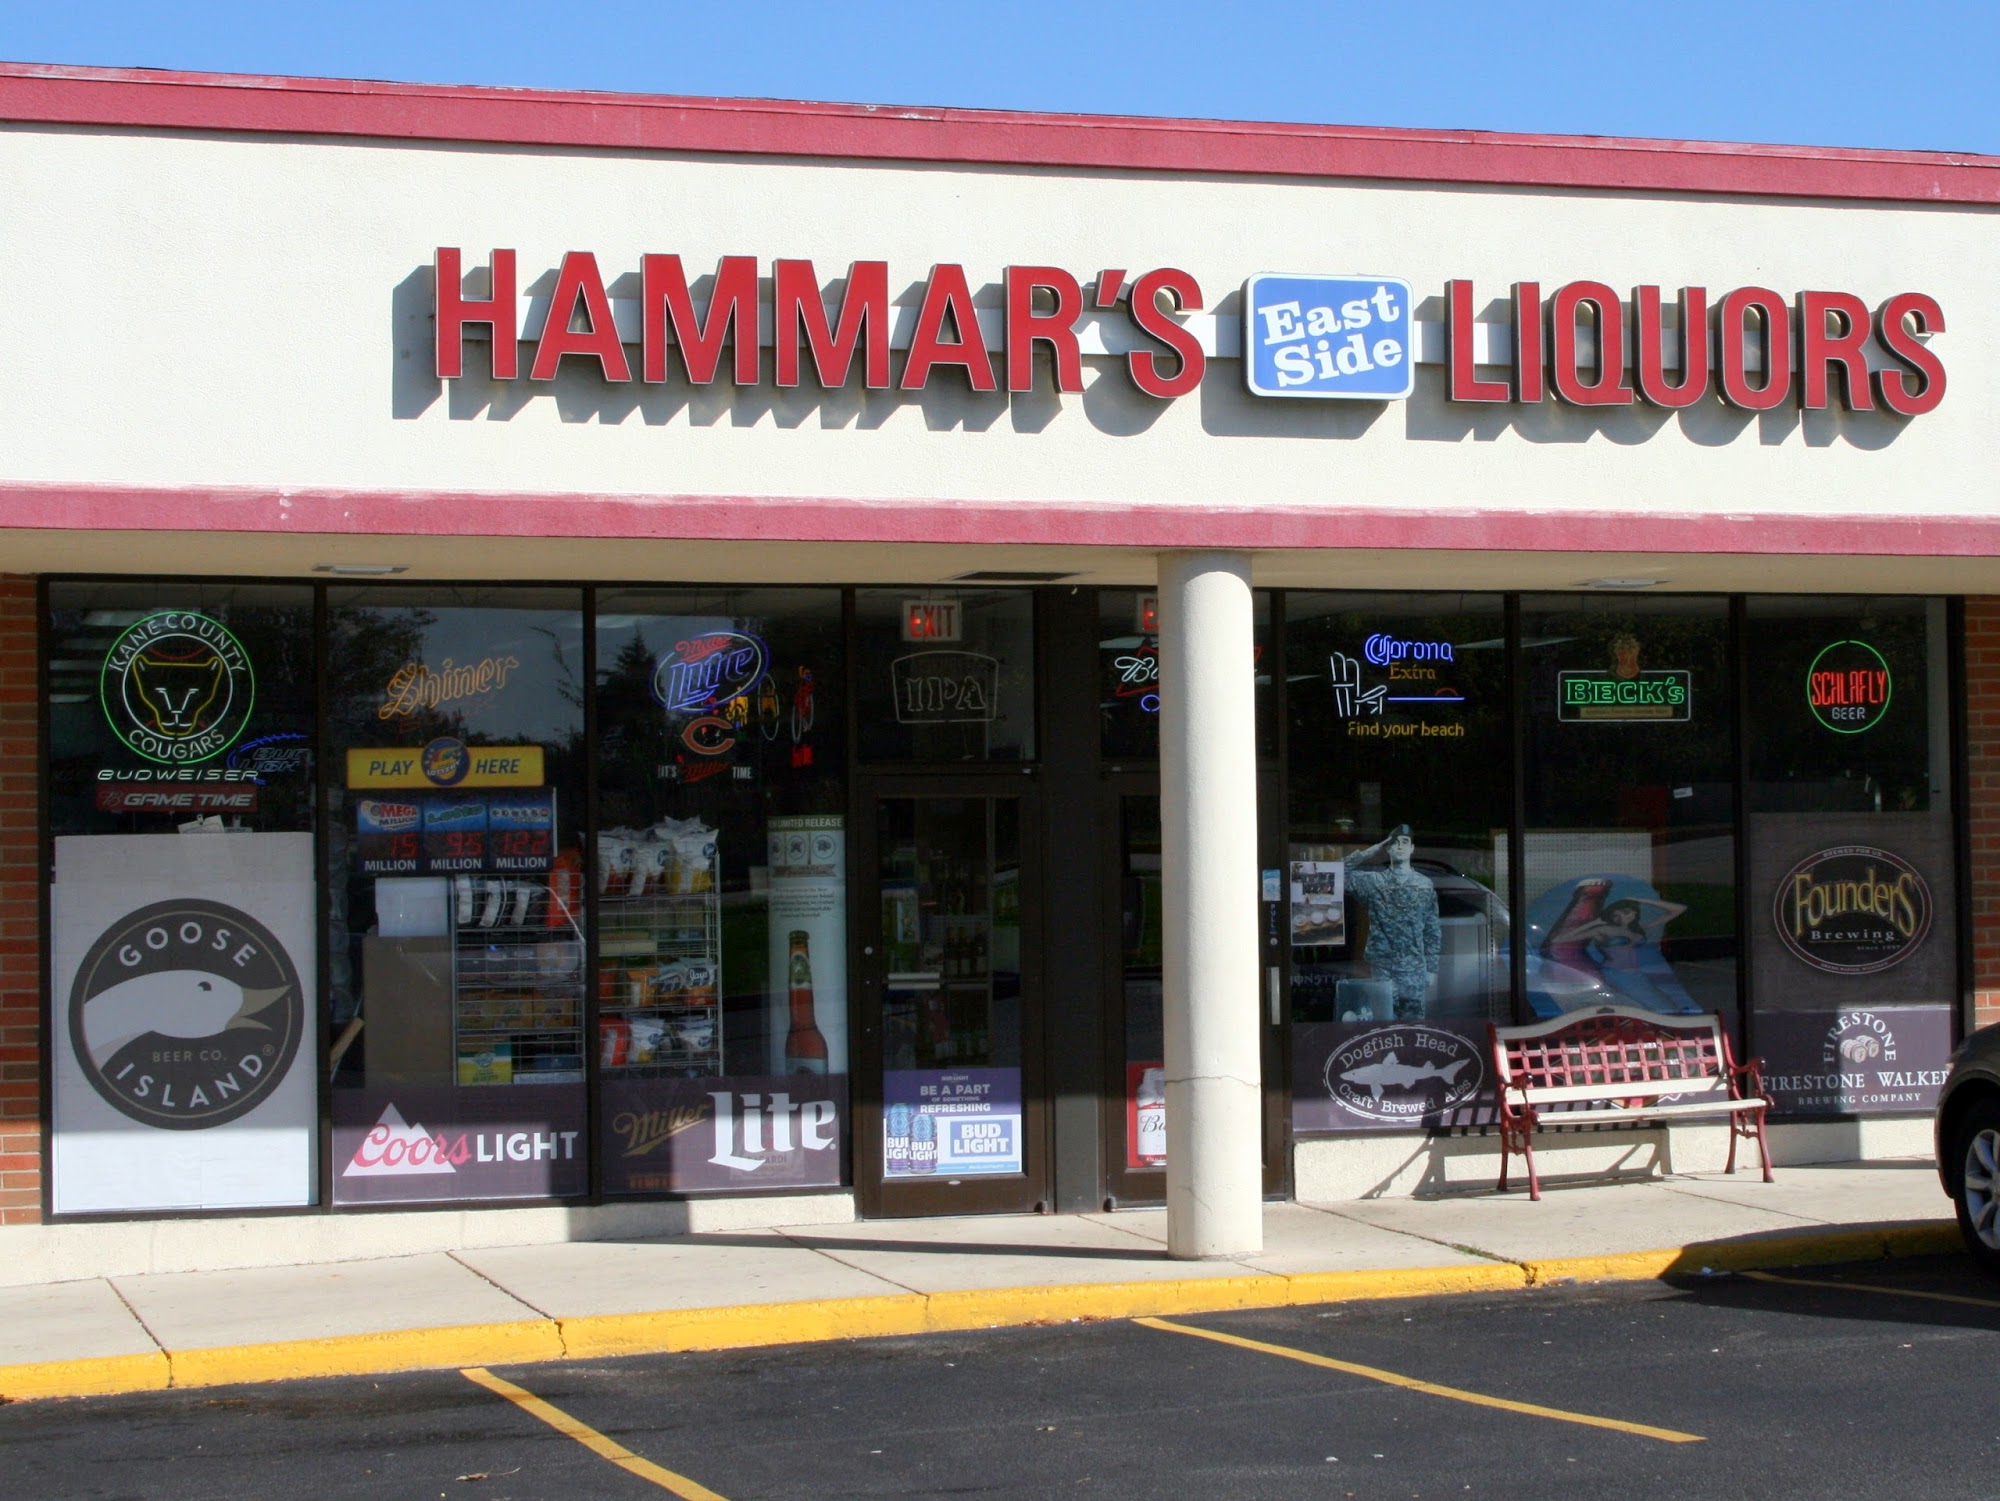 Hammar's East Side Liquors